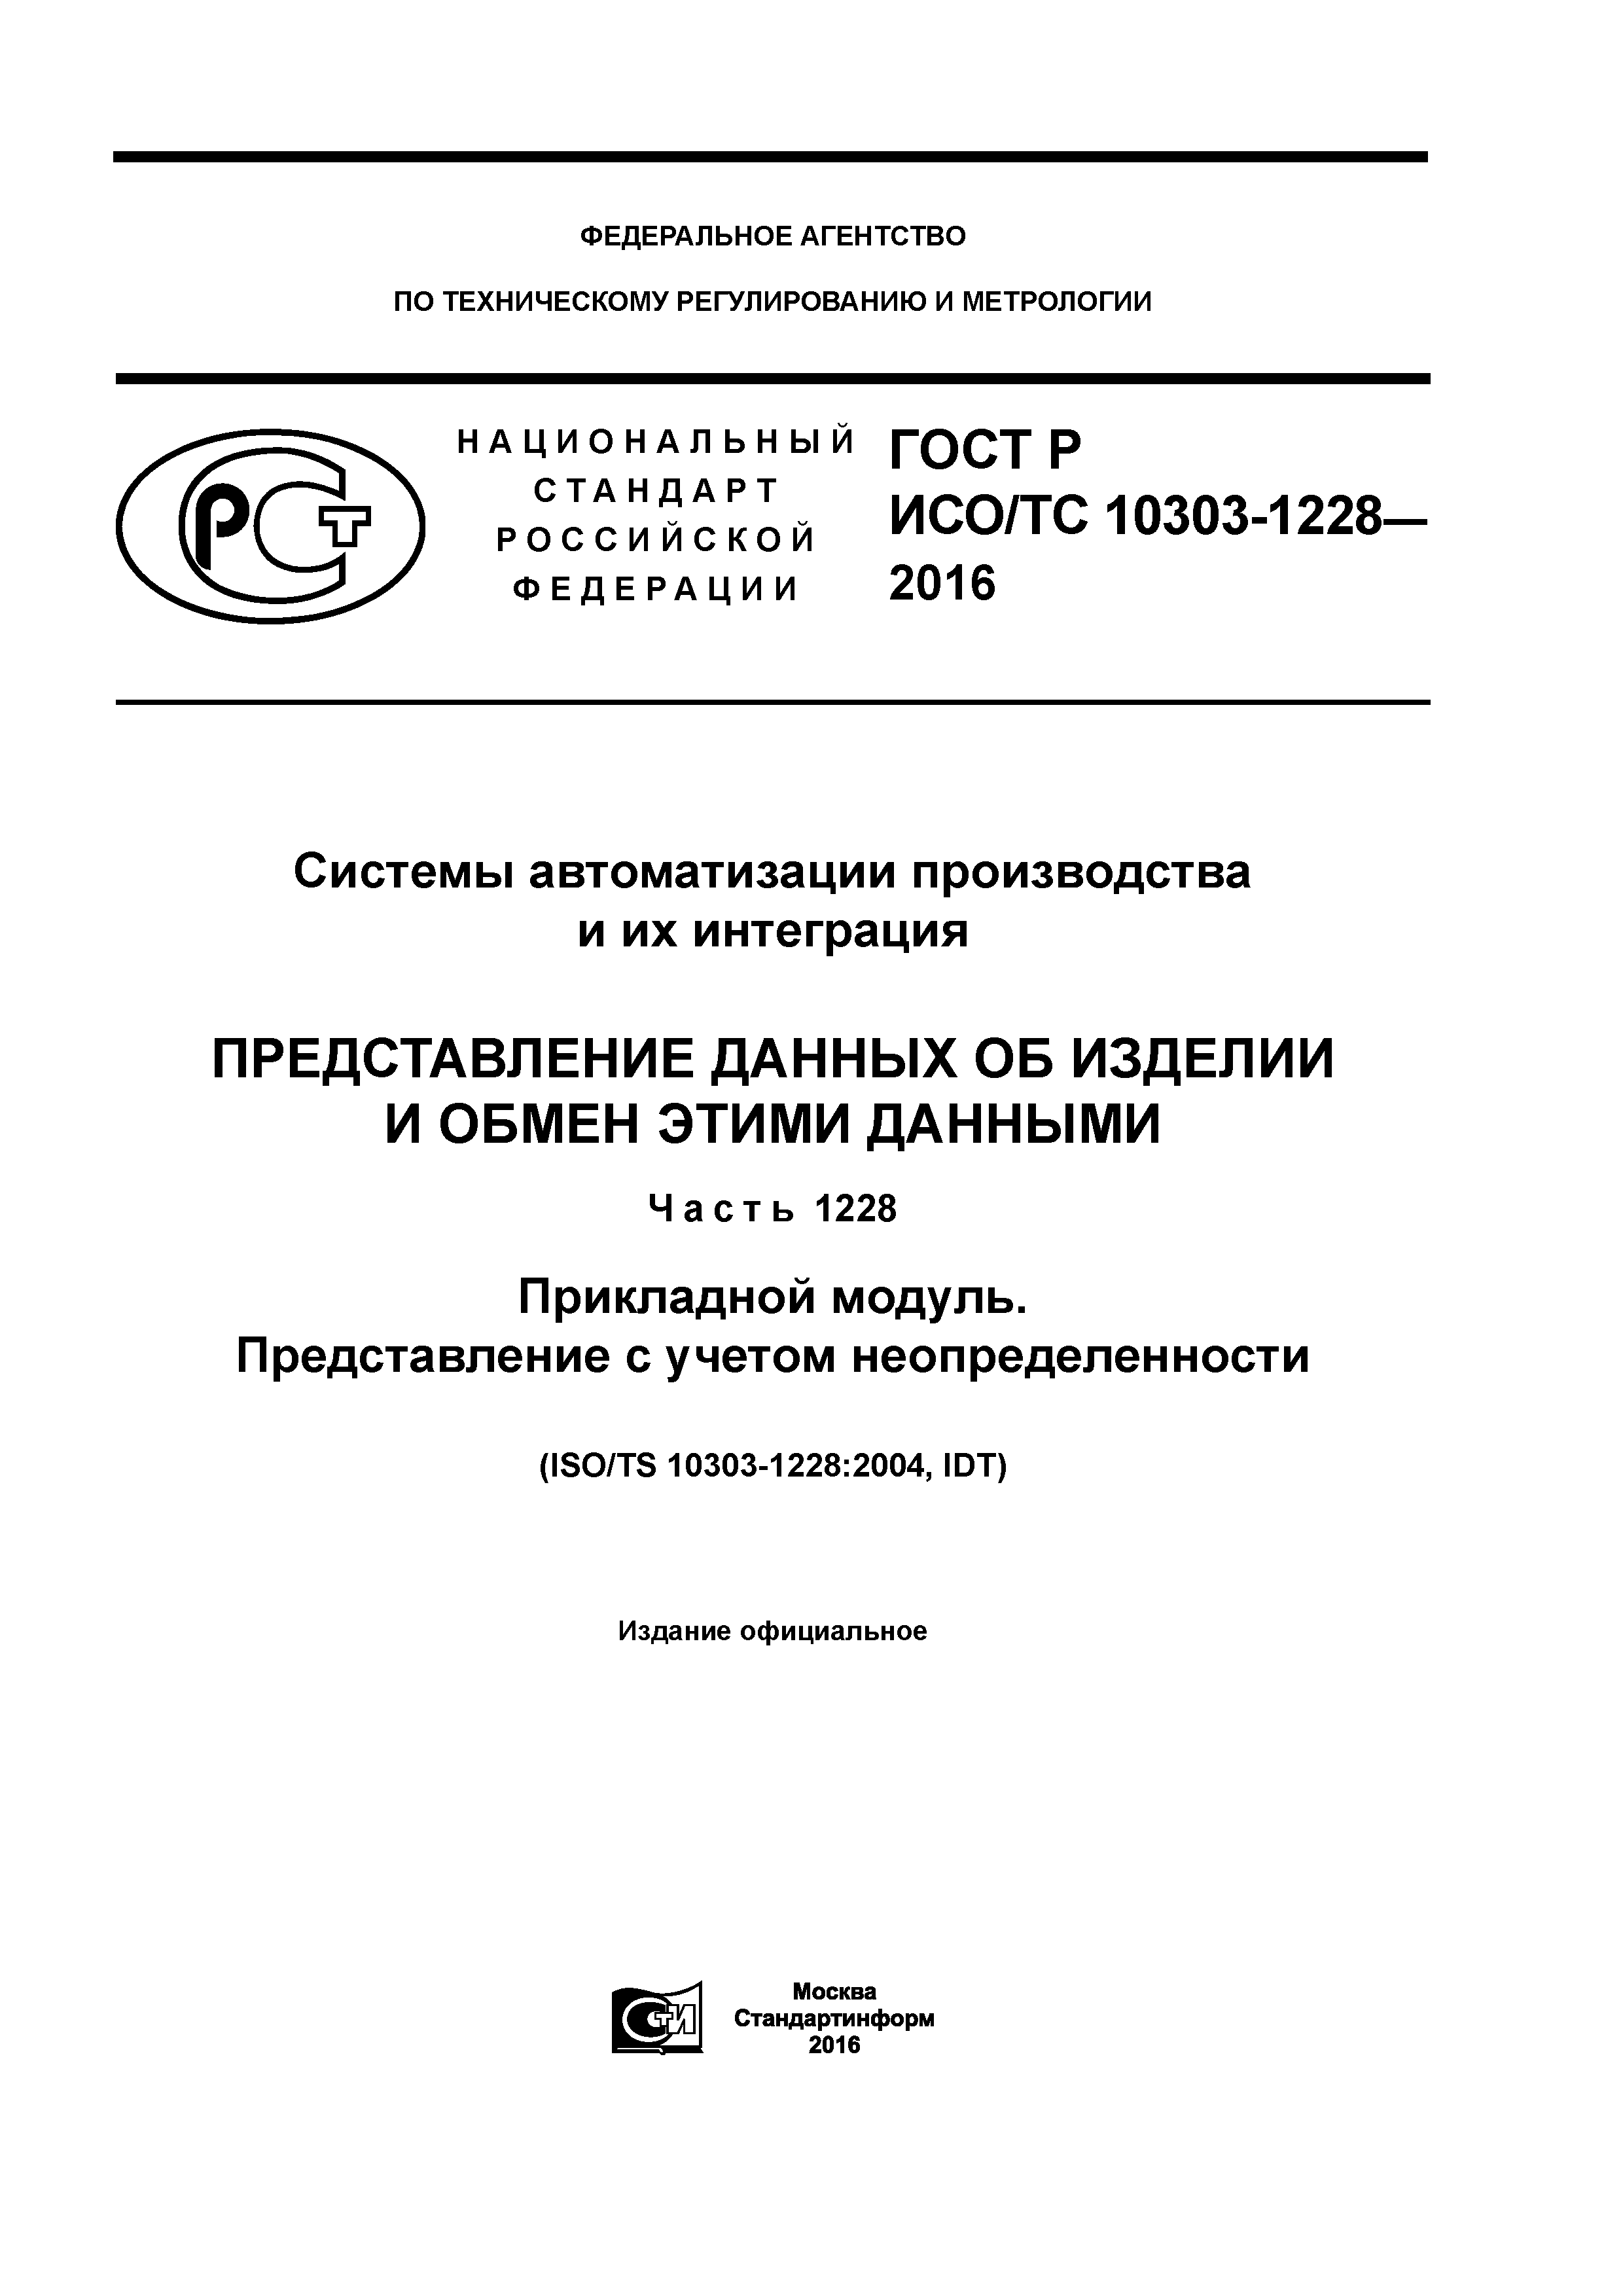 ГОСТ Р ИСО/ТС 10303-1228-2016